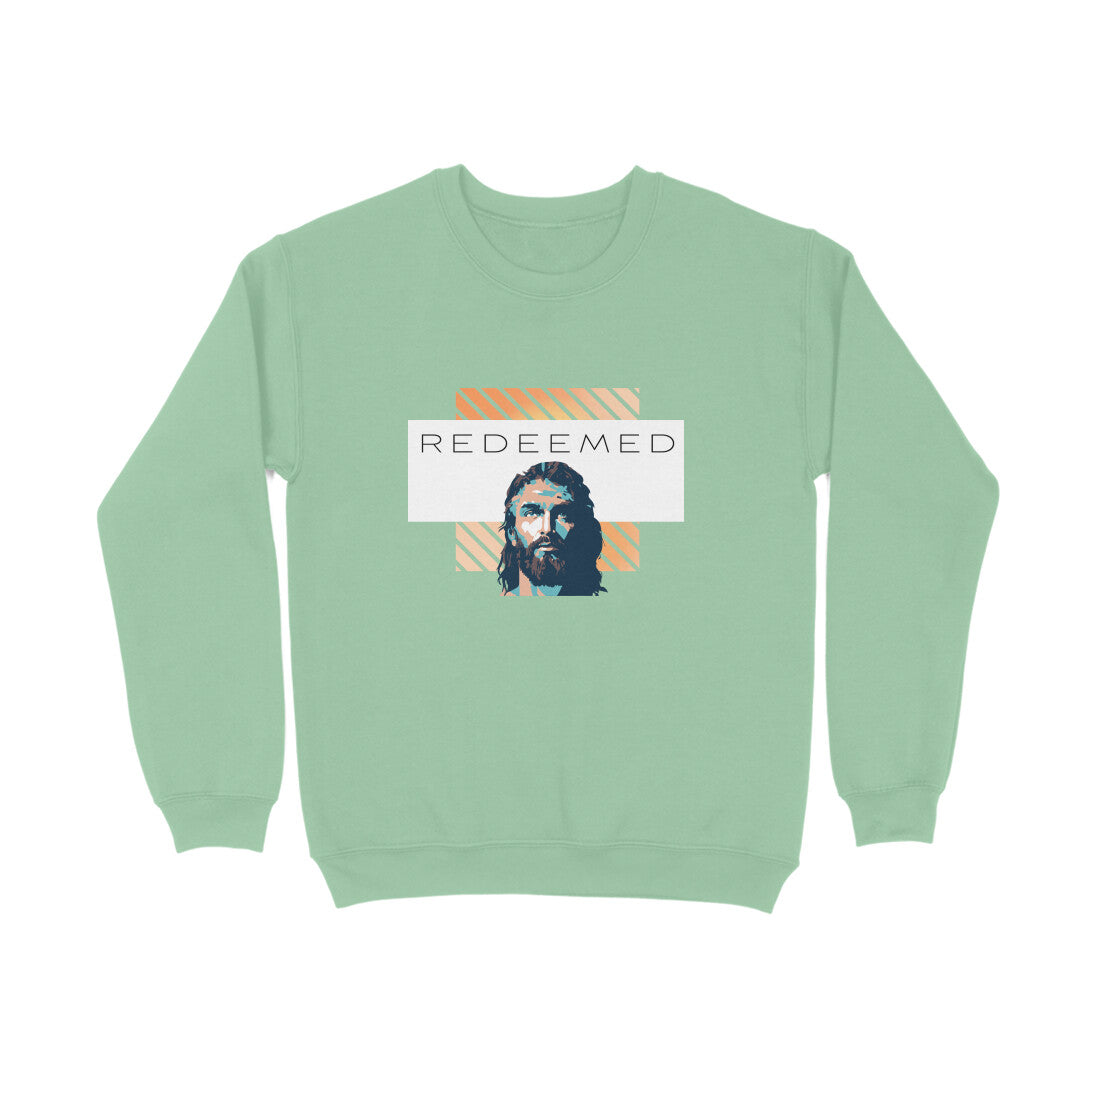 Redeemed again' Sweatshirt